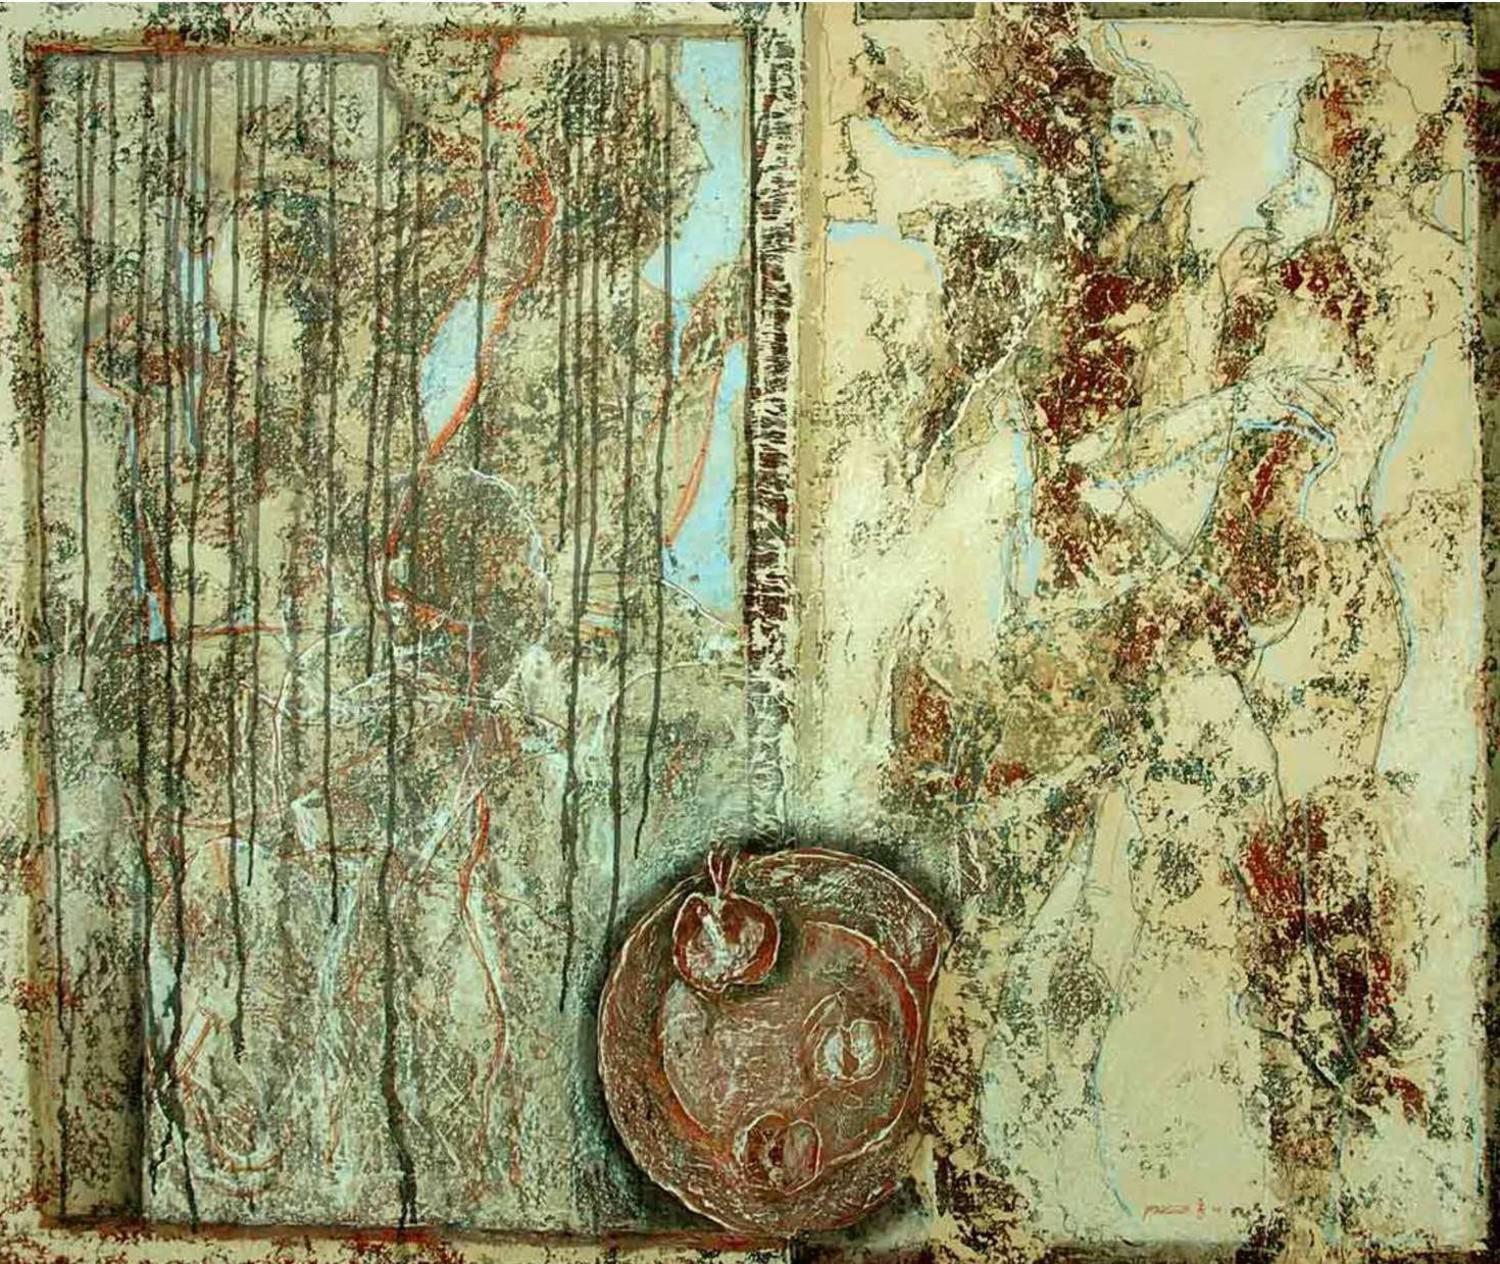 Гранат и яблоки. Владимир Рябчиков. 2005, холст, акрил, 120x100